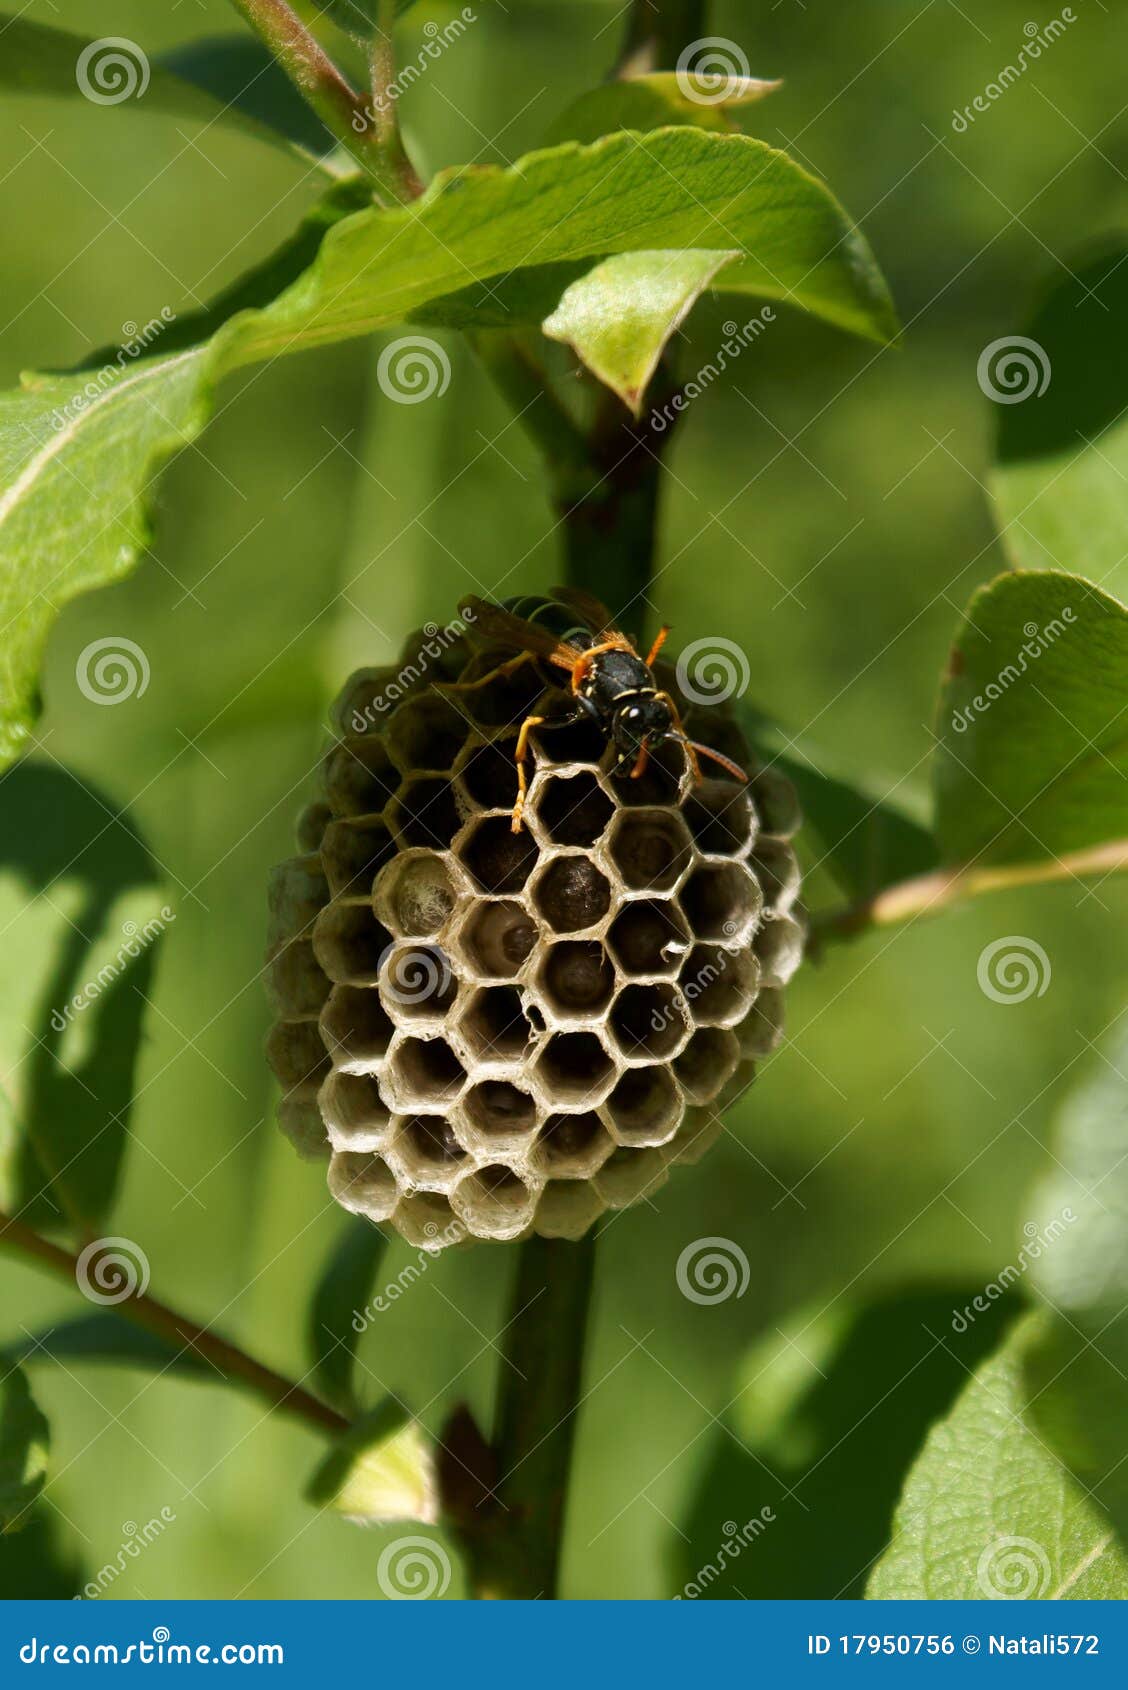 clip art hornets nest - photo #26